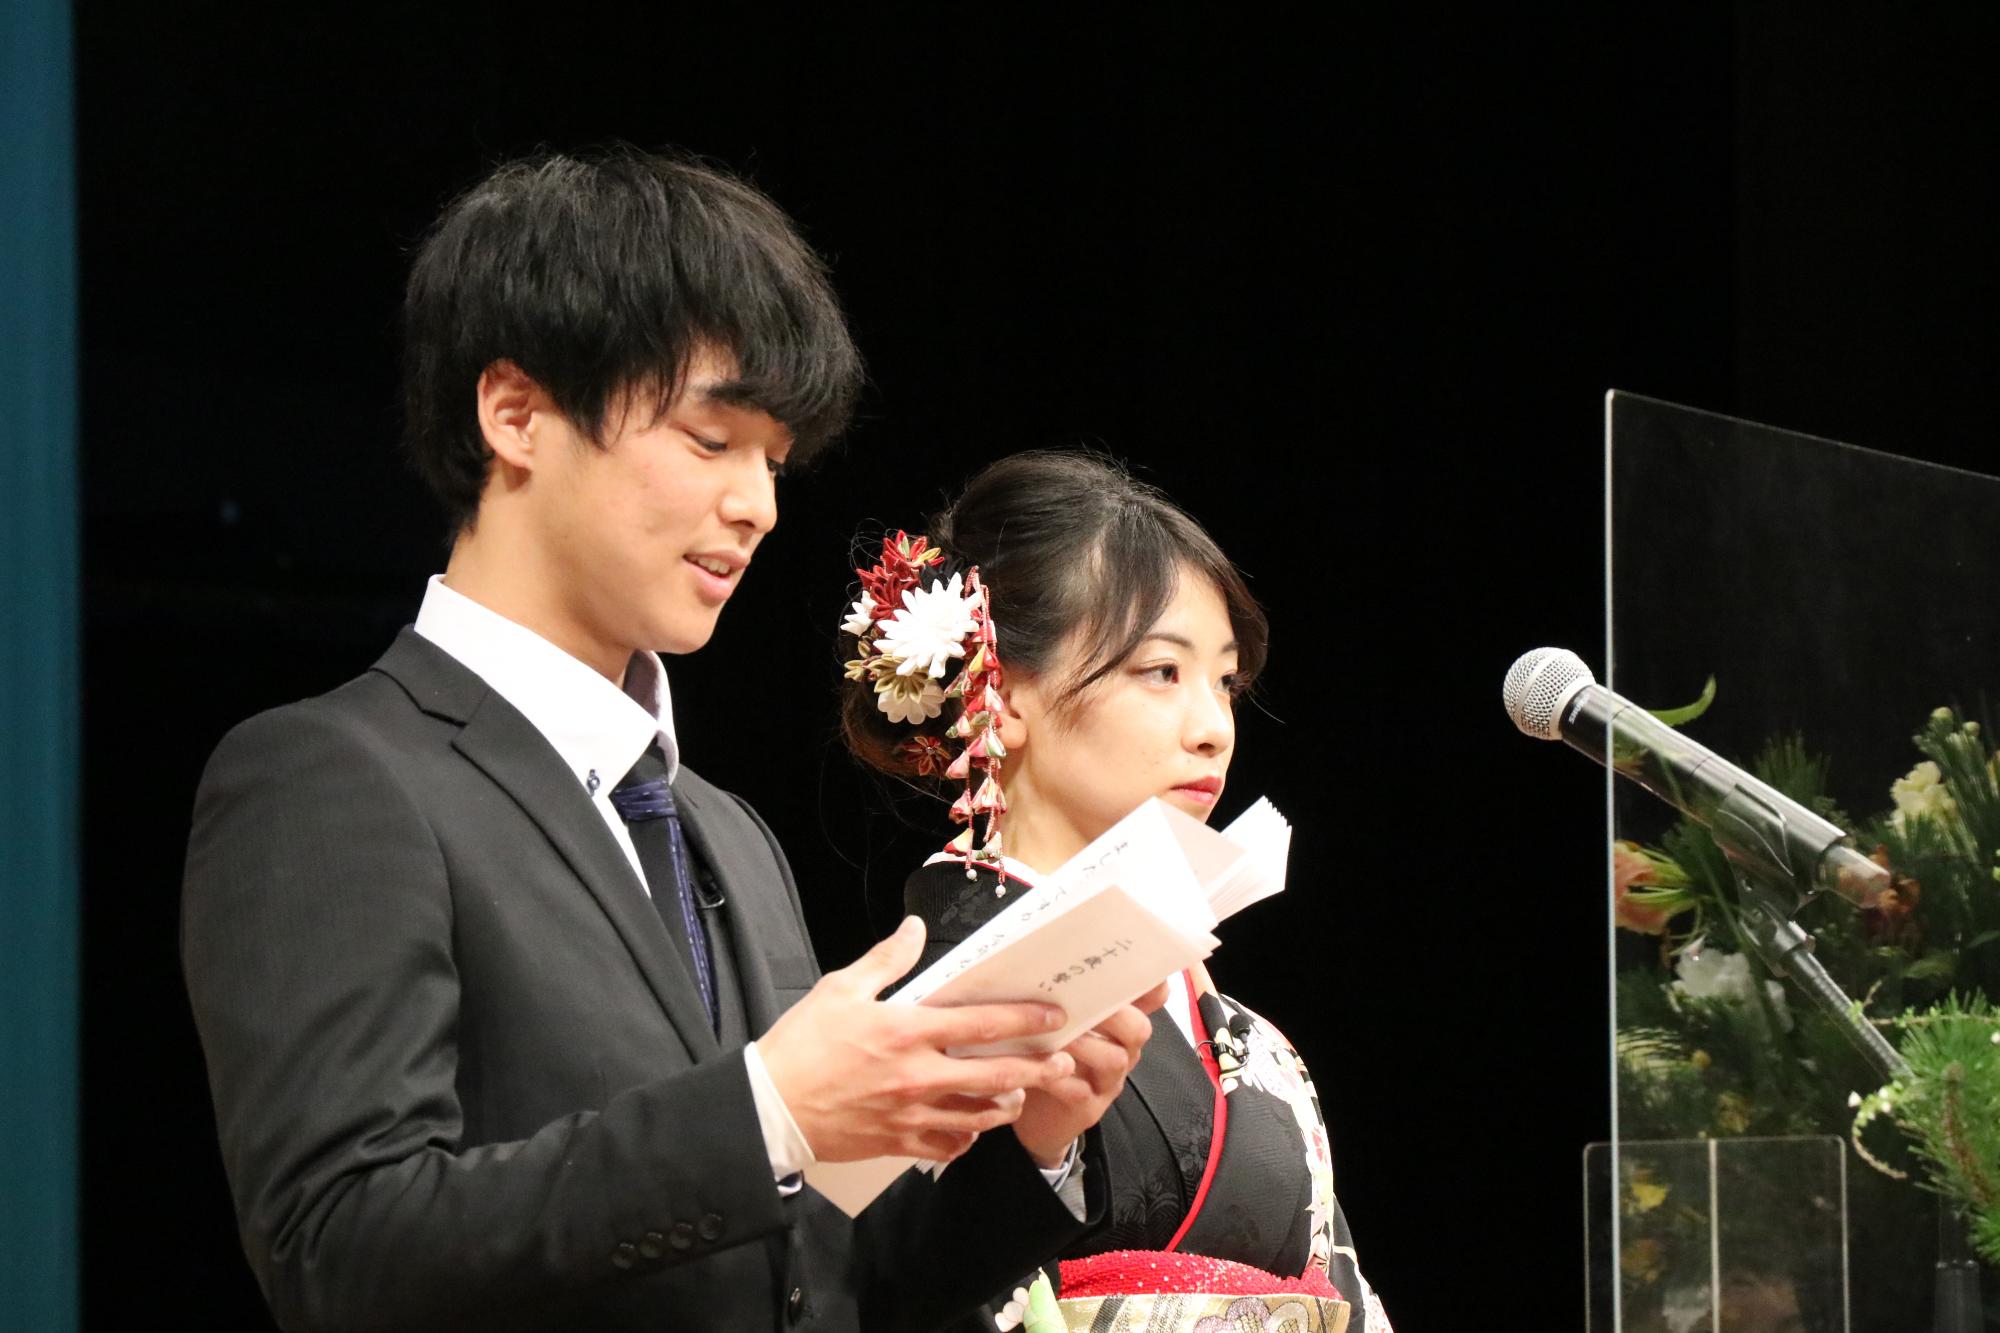 山崎文化会館のステージ上で新成人らに向かって誓いの言葉を述べる平瀬竜己也さんと森脇美海さんの写真